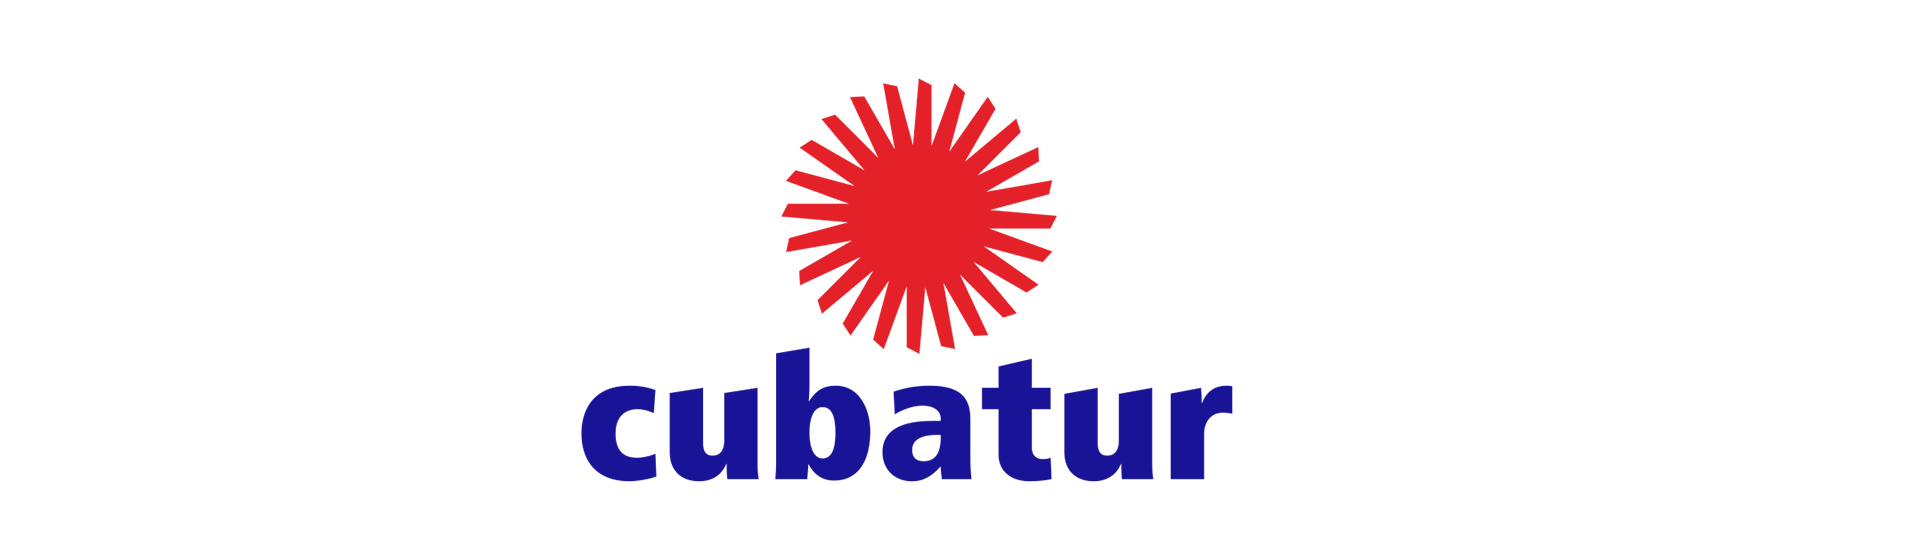 Logotipo Cubatur Cuba